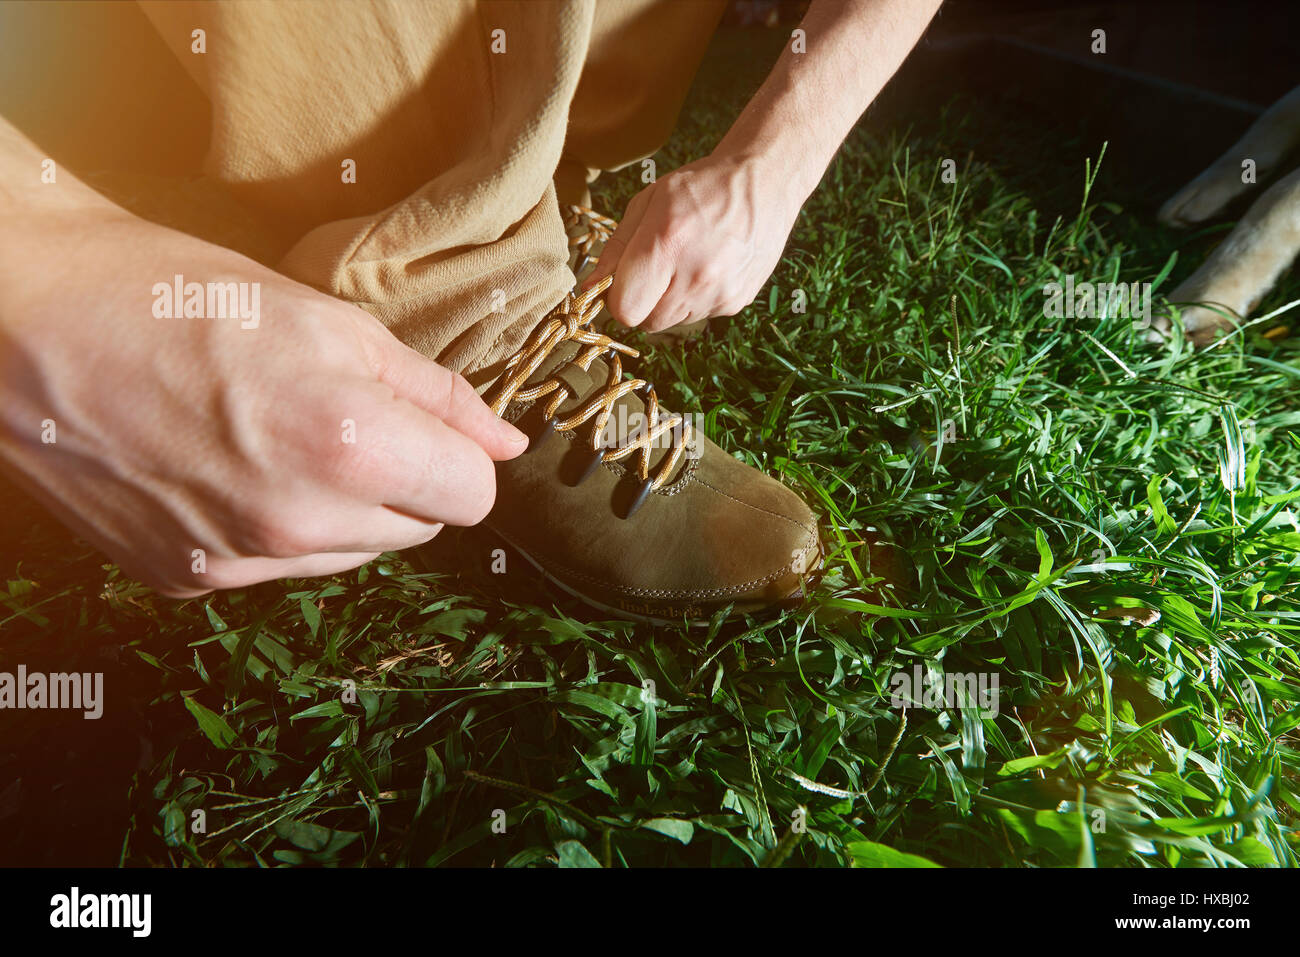 Nahaufnahme der Bindung Wandern Schuhe stehen auf dem grünen Rasen. Mann seine Schnürsenkel zu binden Stockfoto